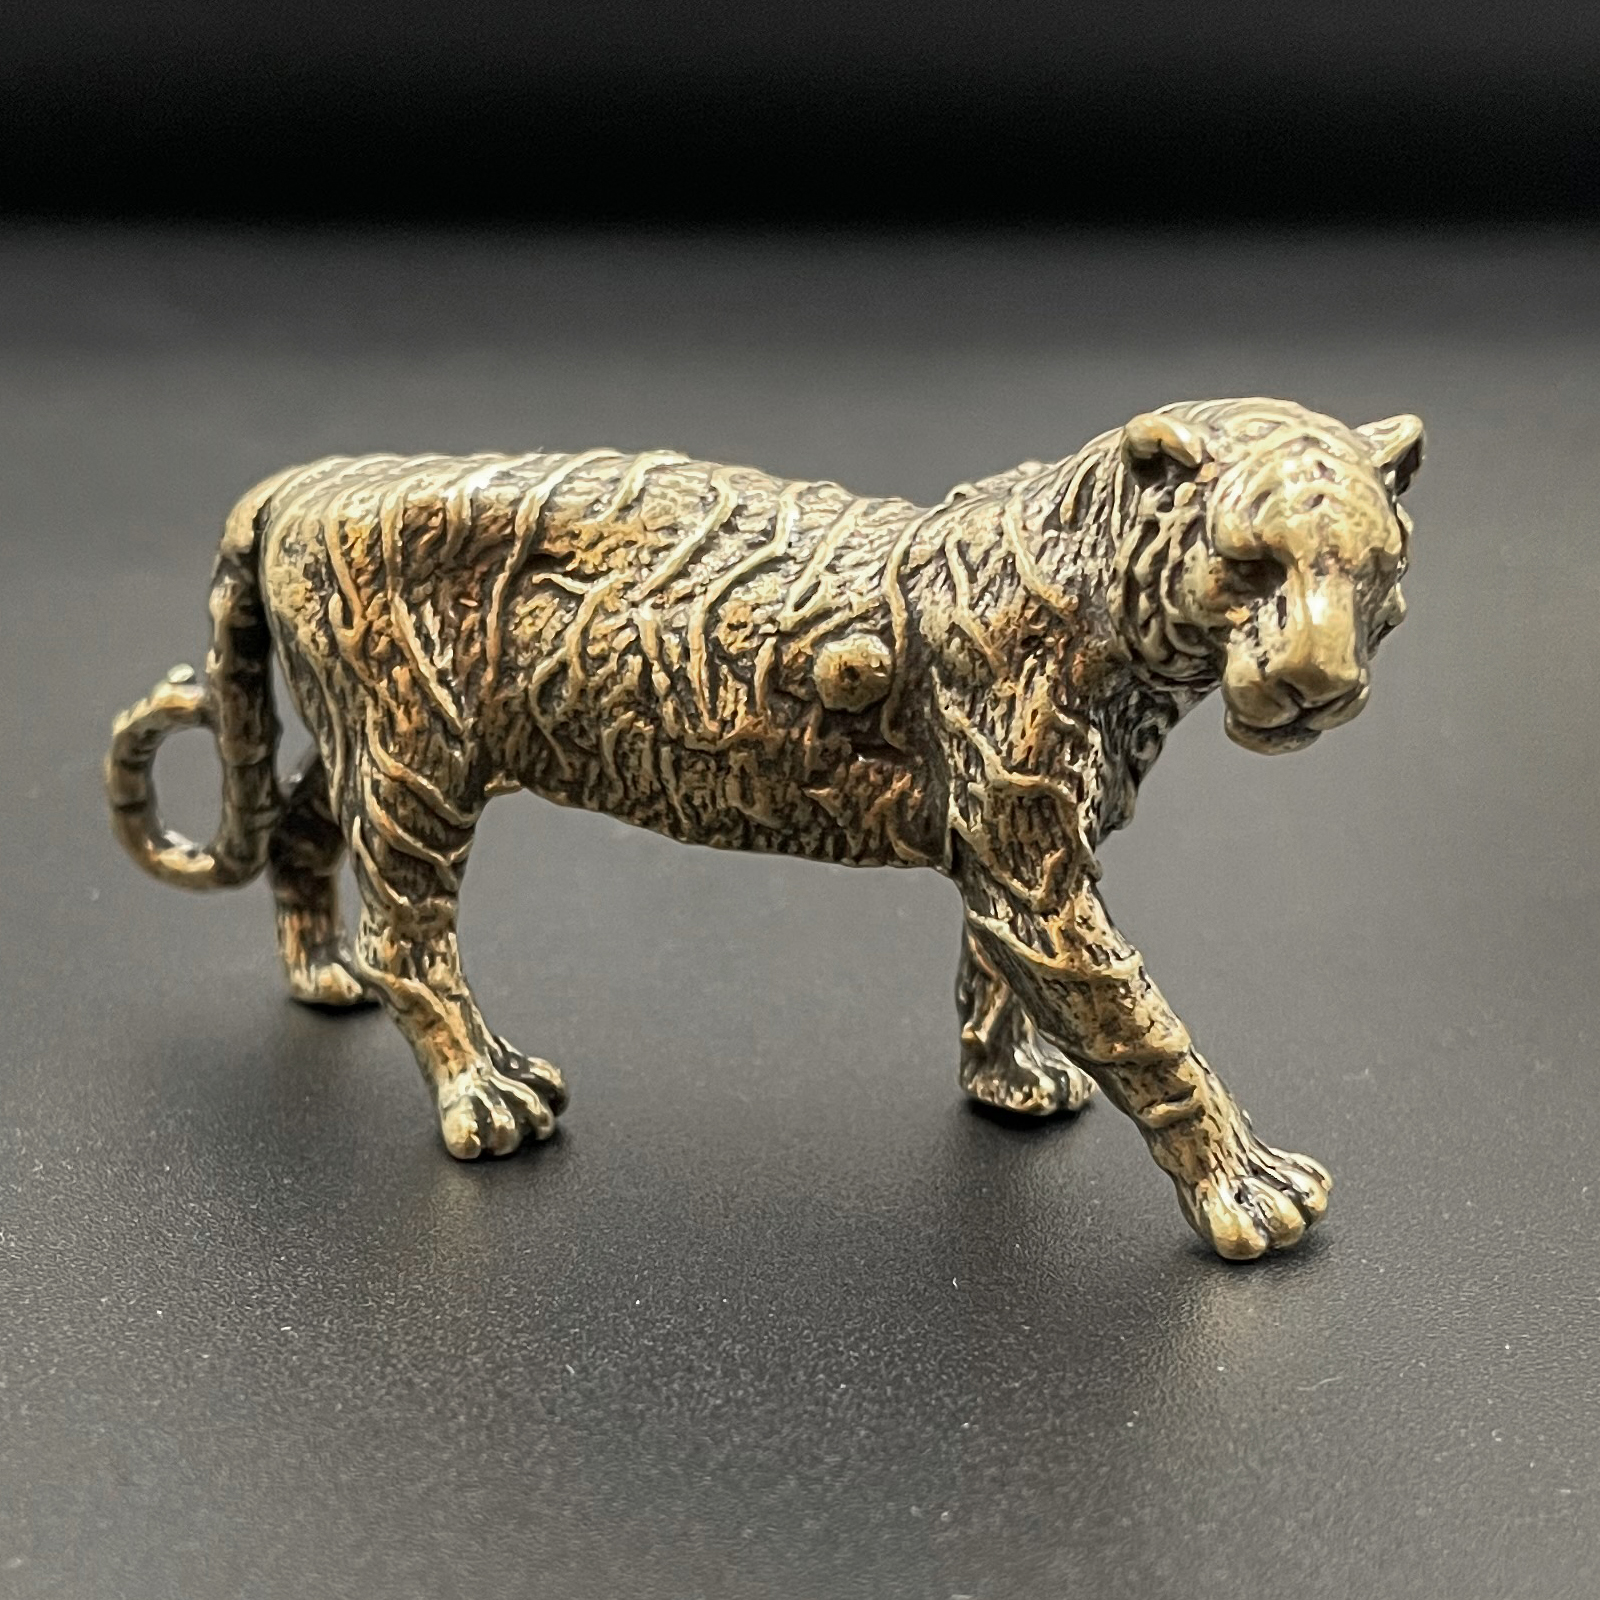 Brass Tiger Statue Mini Animals Brass Tiger Decor Ornament for